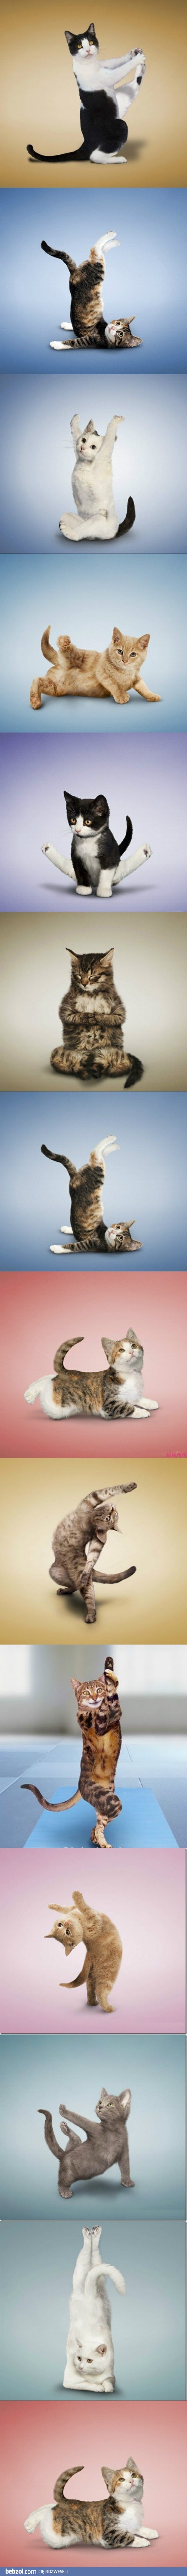 Yoga cats 